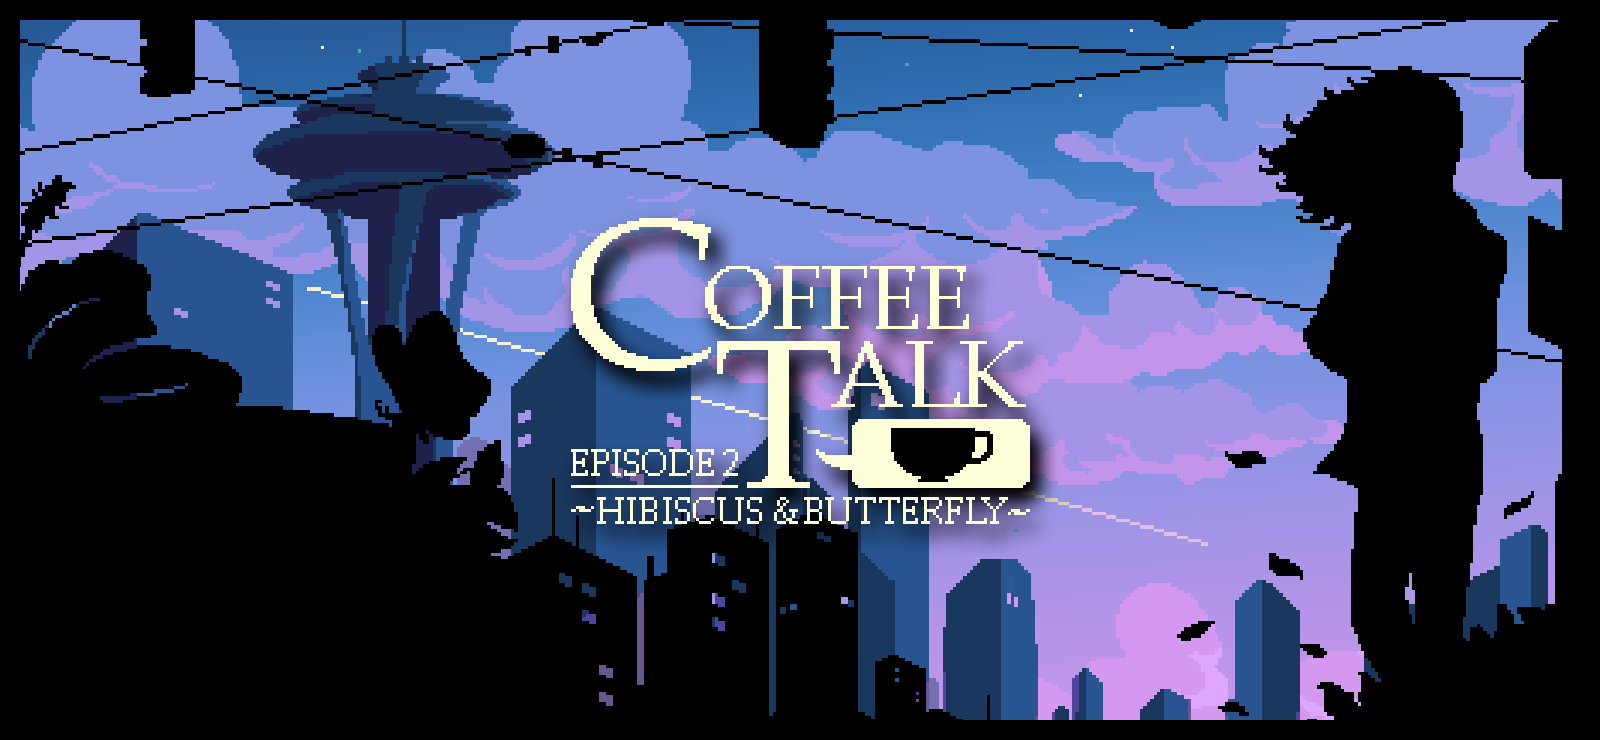 Coffee Talk episode 2 Artwork